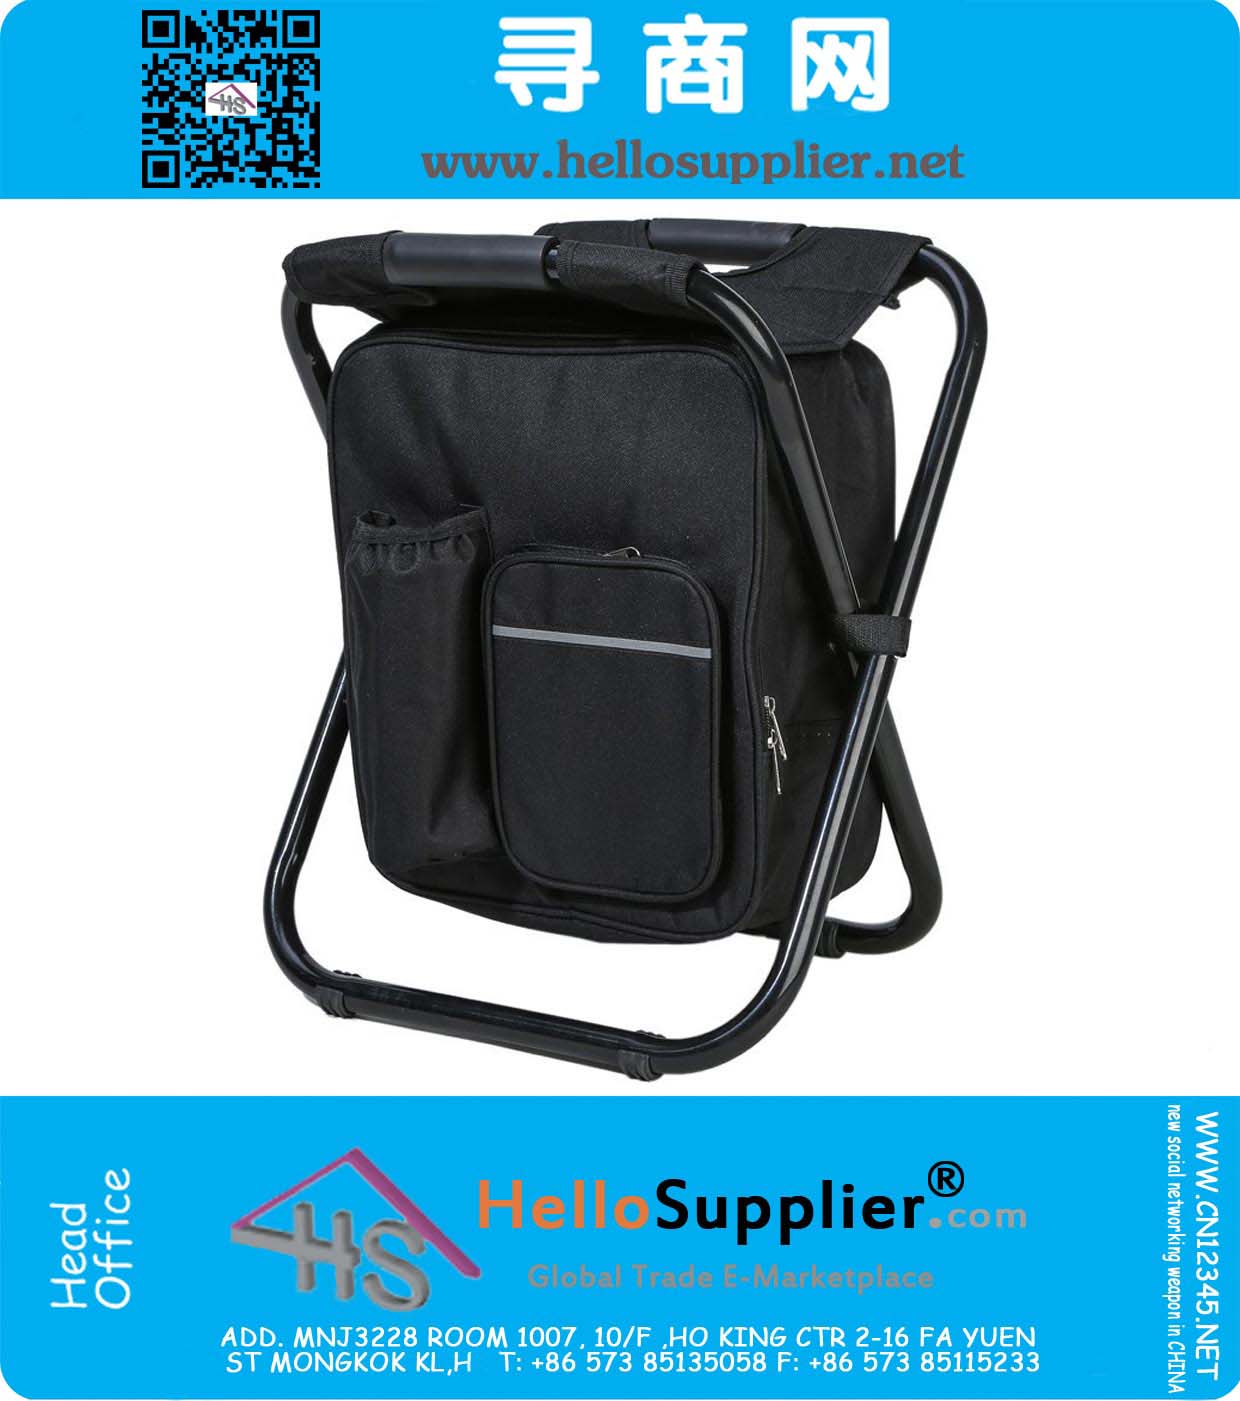 Многофункциональный рюкзак Складной стул с сумкой для курящих для рыбалки, пляжа, кемпинга и прогулок